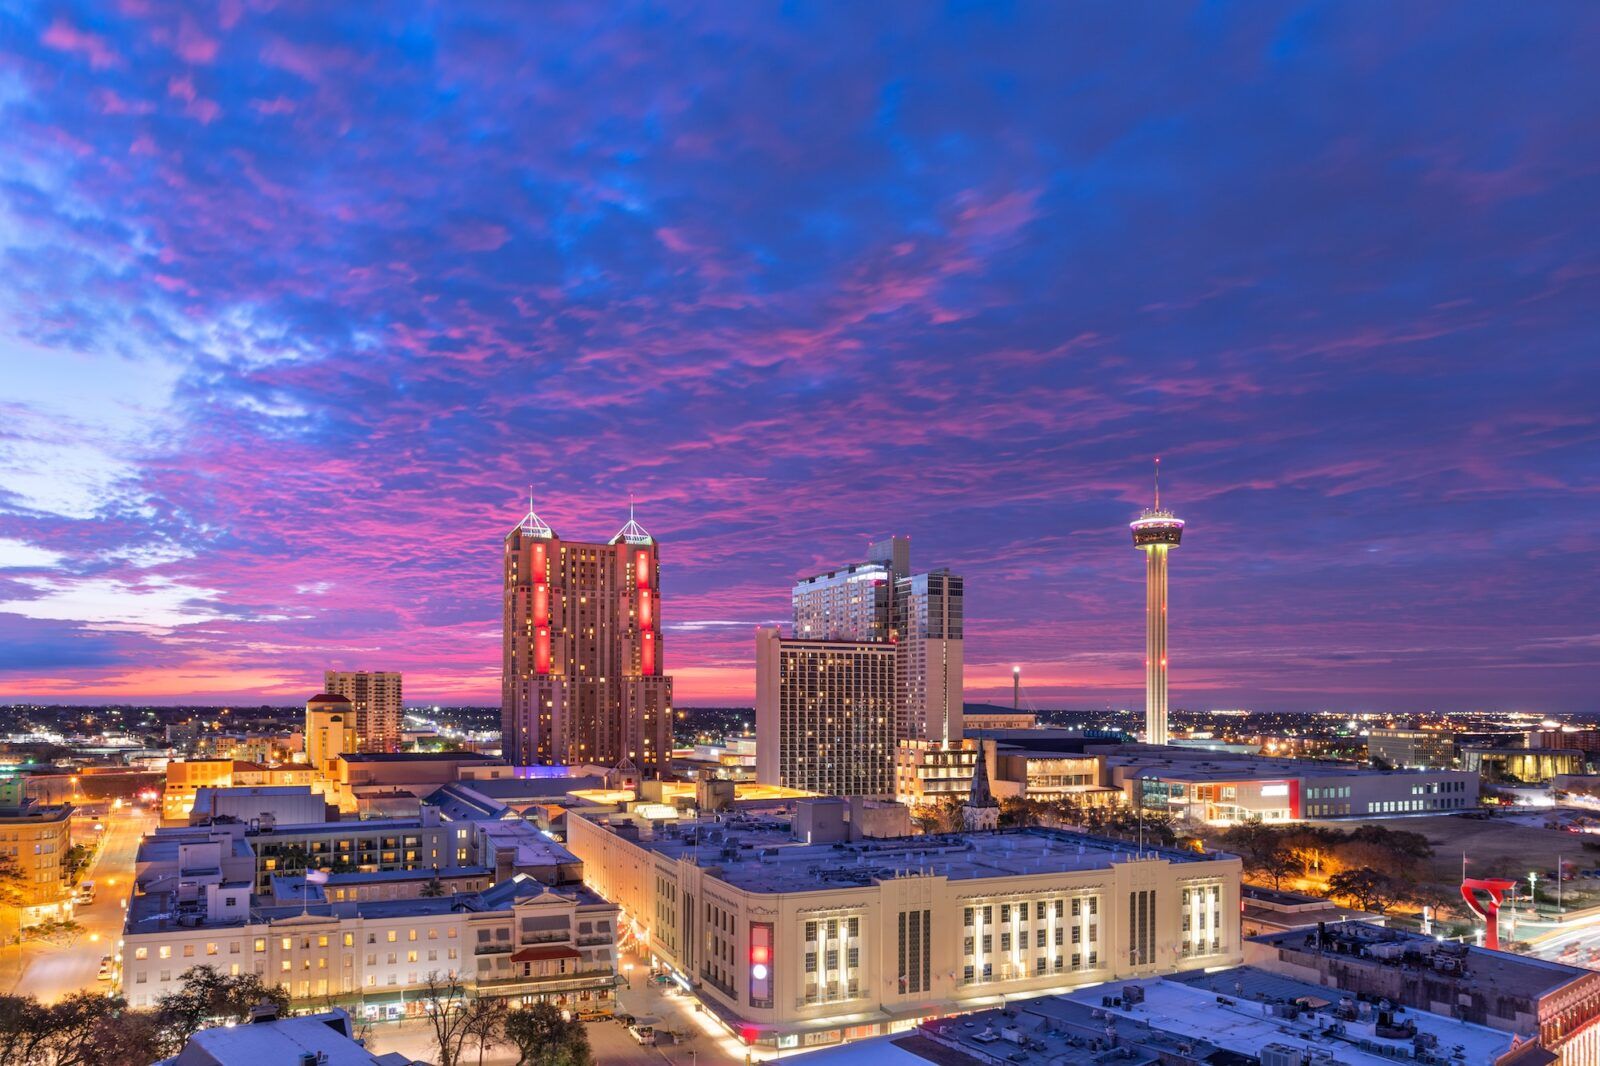 San Antonio, Texas, USA Skyline